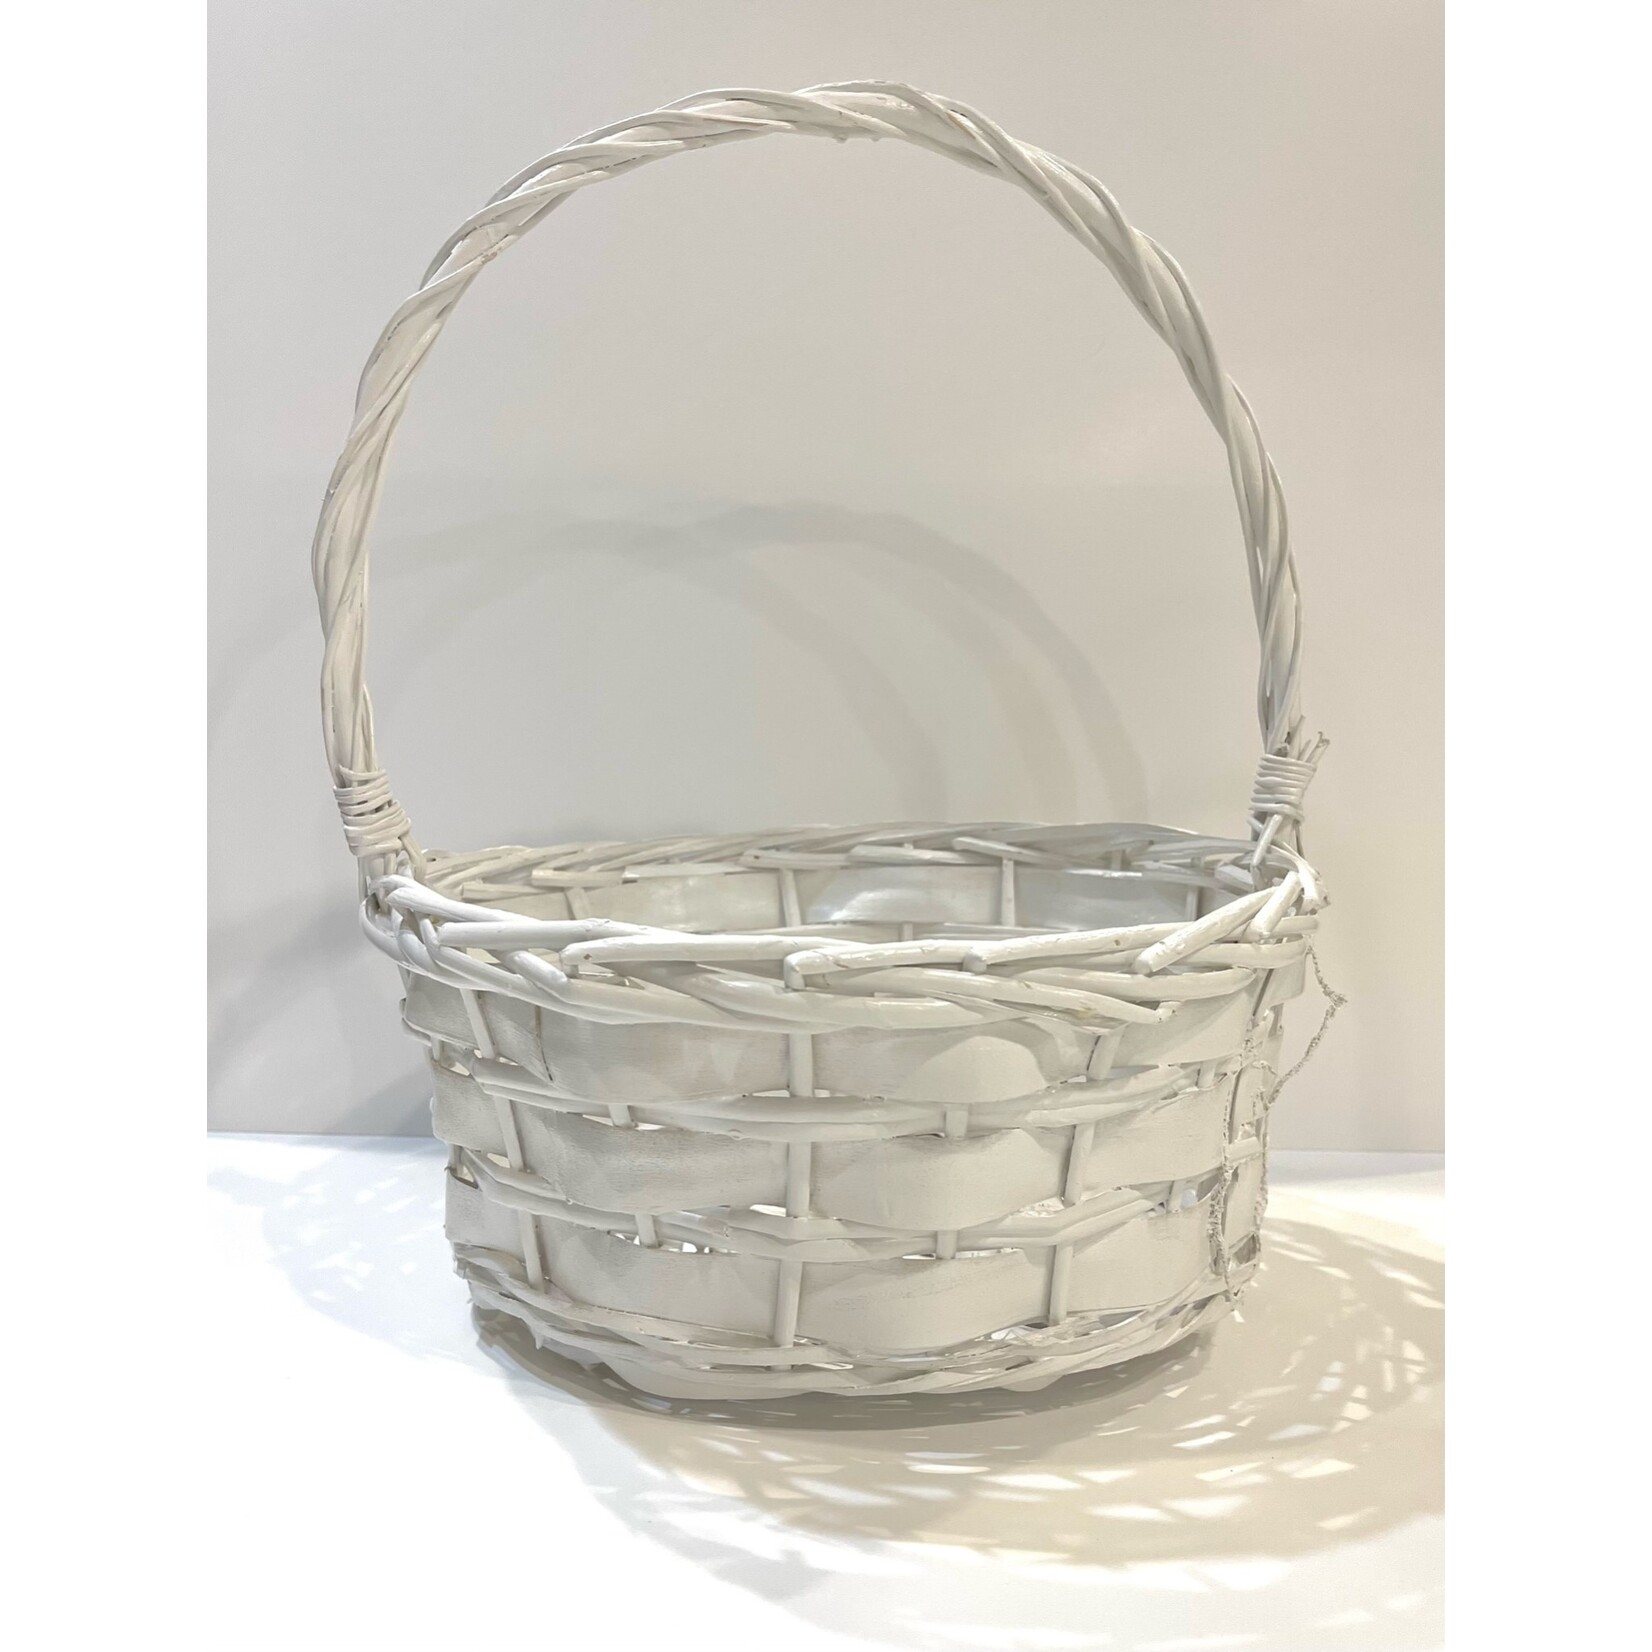 White Easter Basket